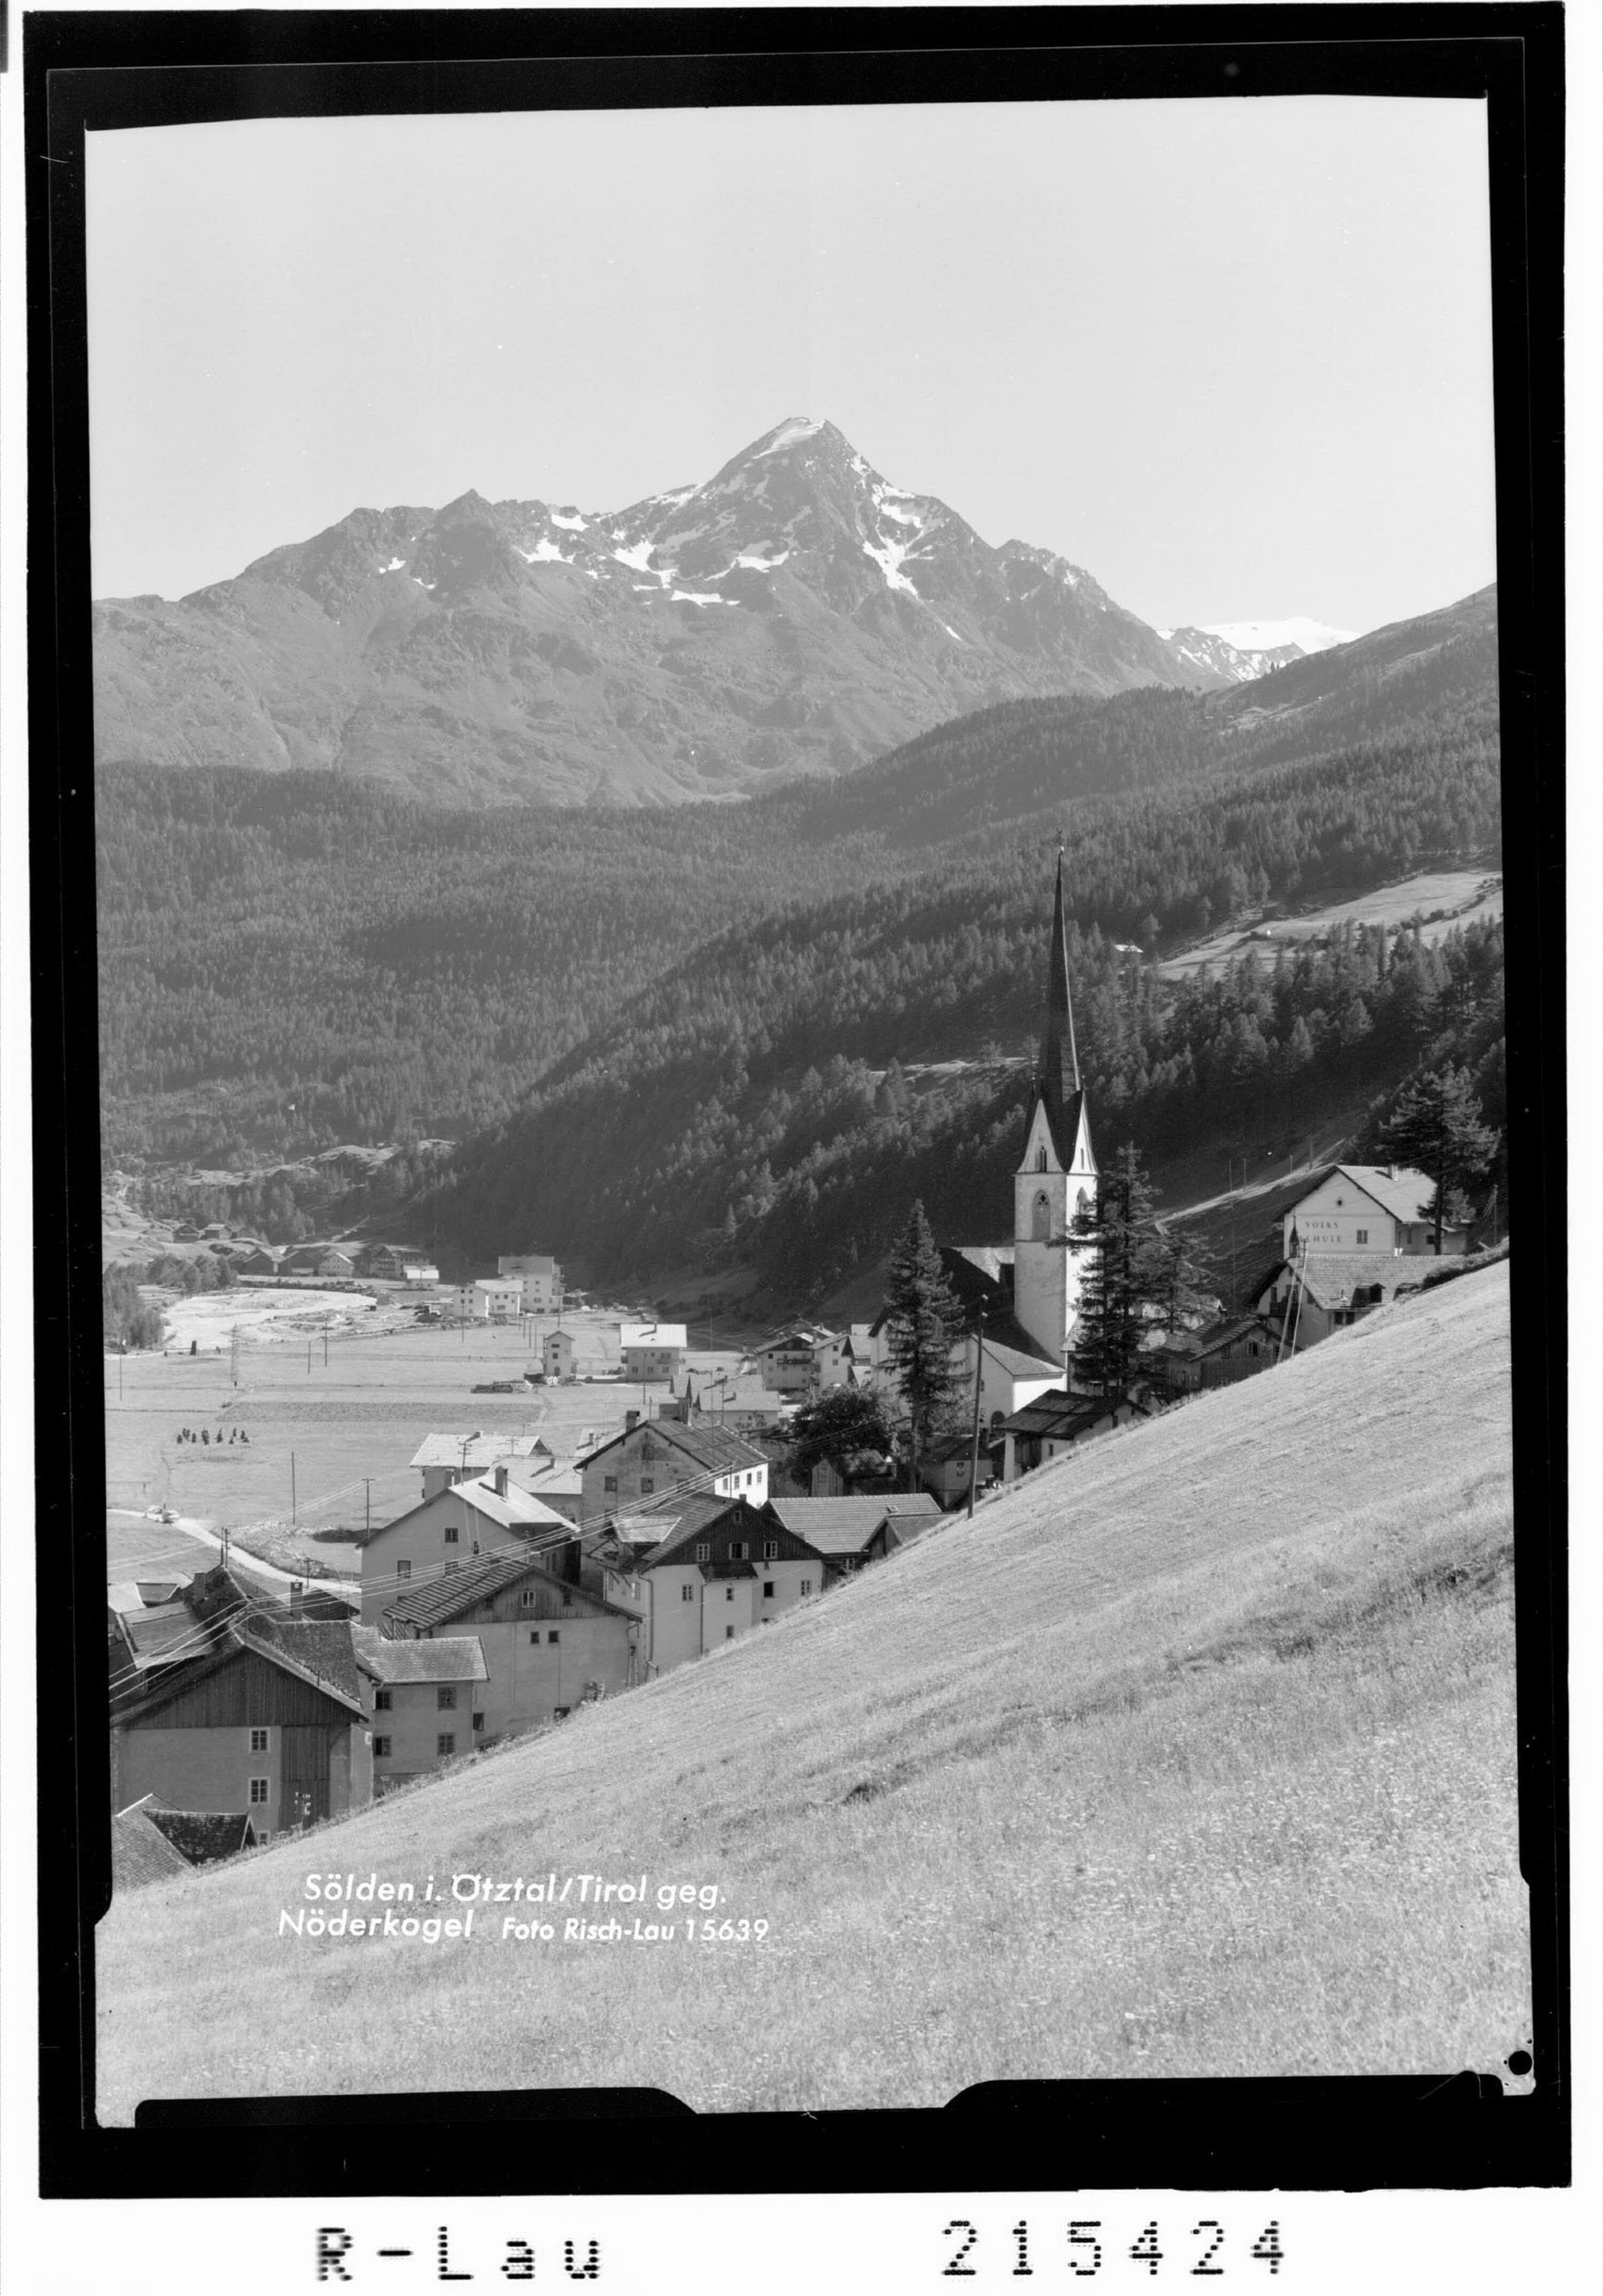 Sölden im Ötztal / Tirol gegen Nöderkogel></div>


    <hr>
    <div class=